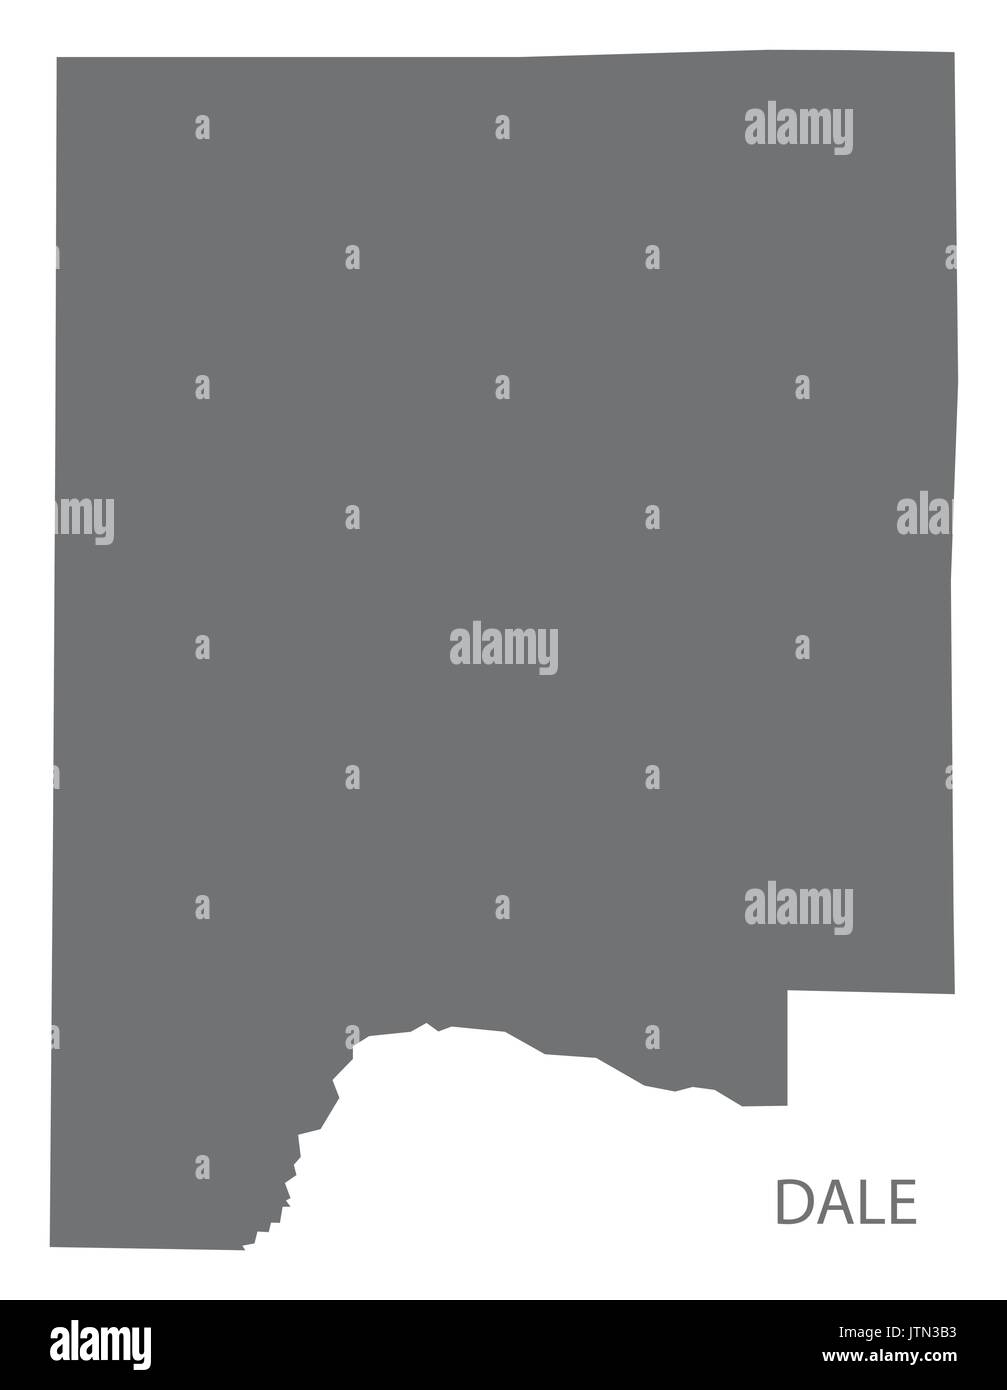 Dale county map di Alabama USA grigio silhouette di illustrazione Illustrazione Vettoriale